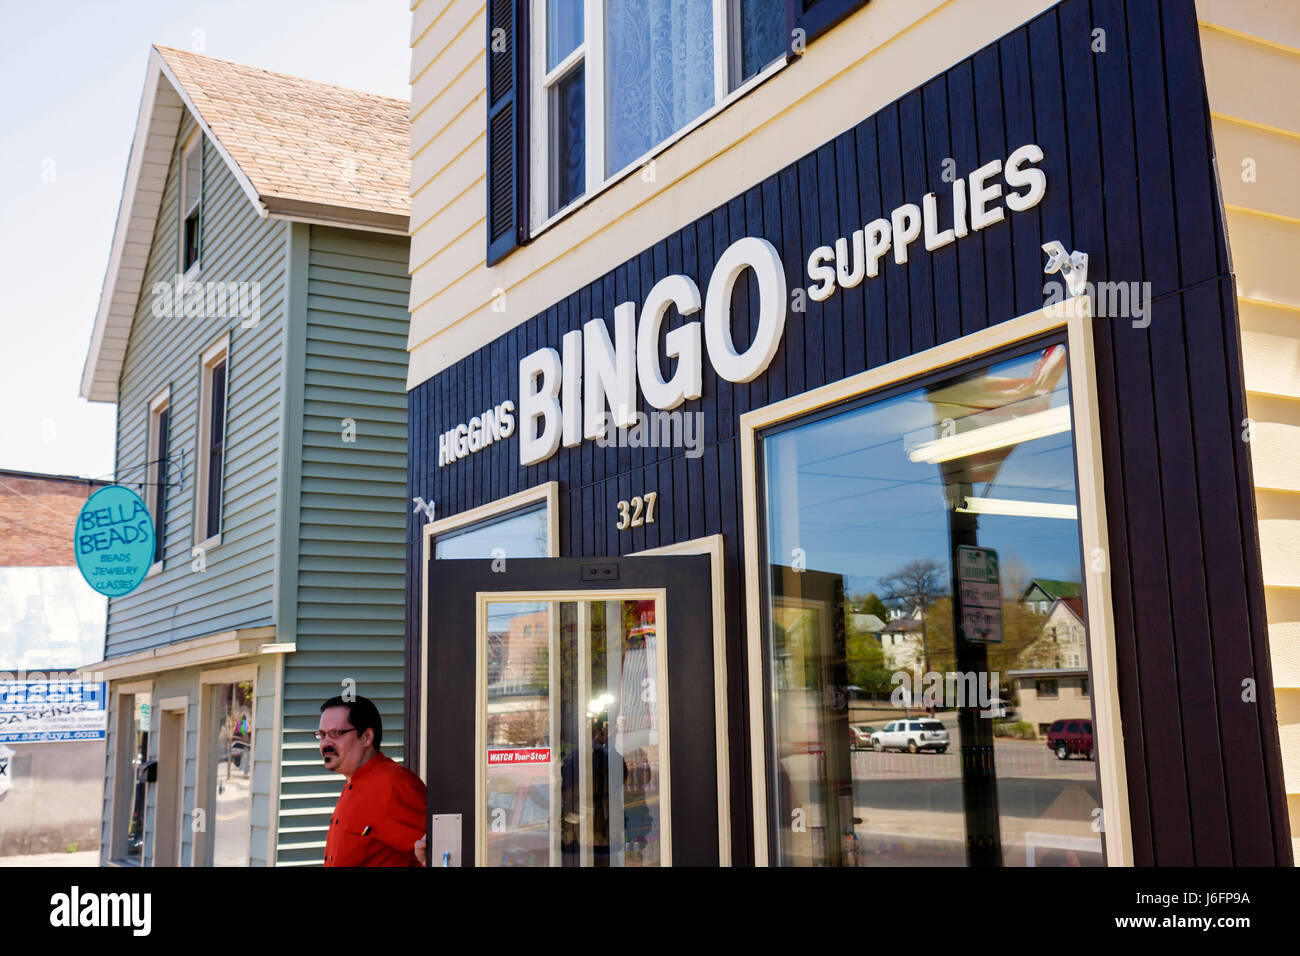 Bingo Supply Store